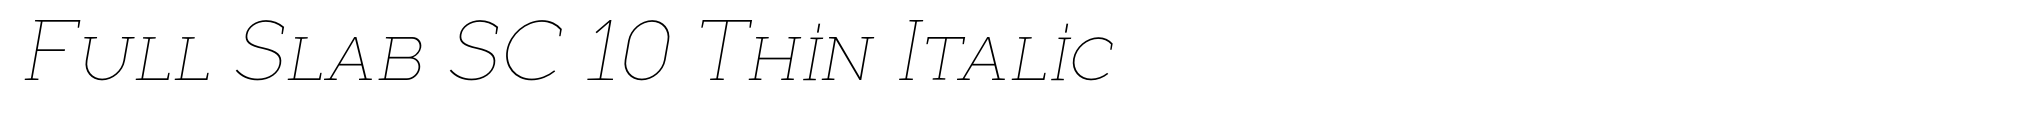 Full Slab SC 10 Thin Italic image